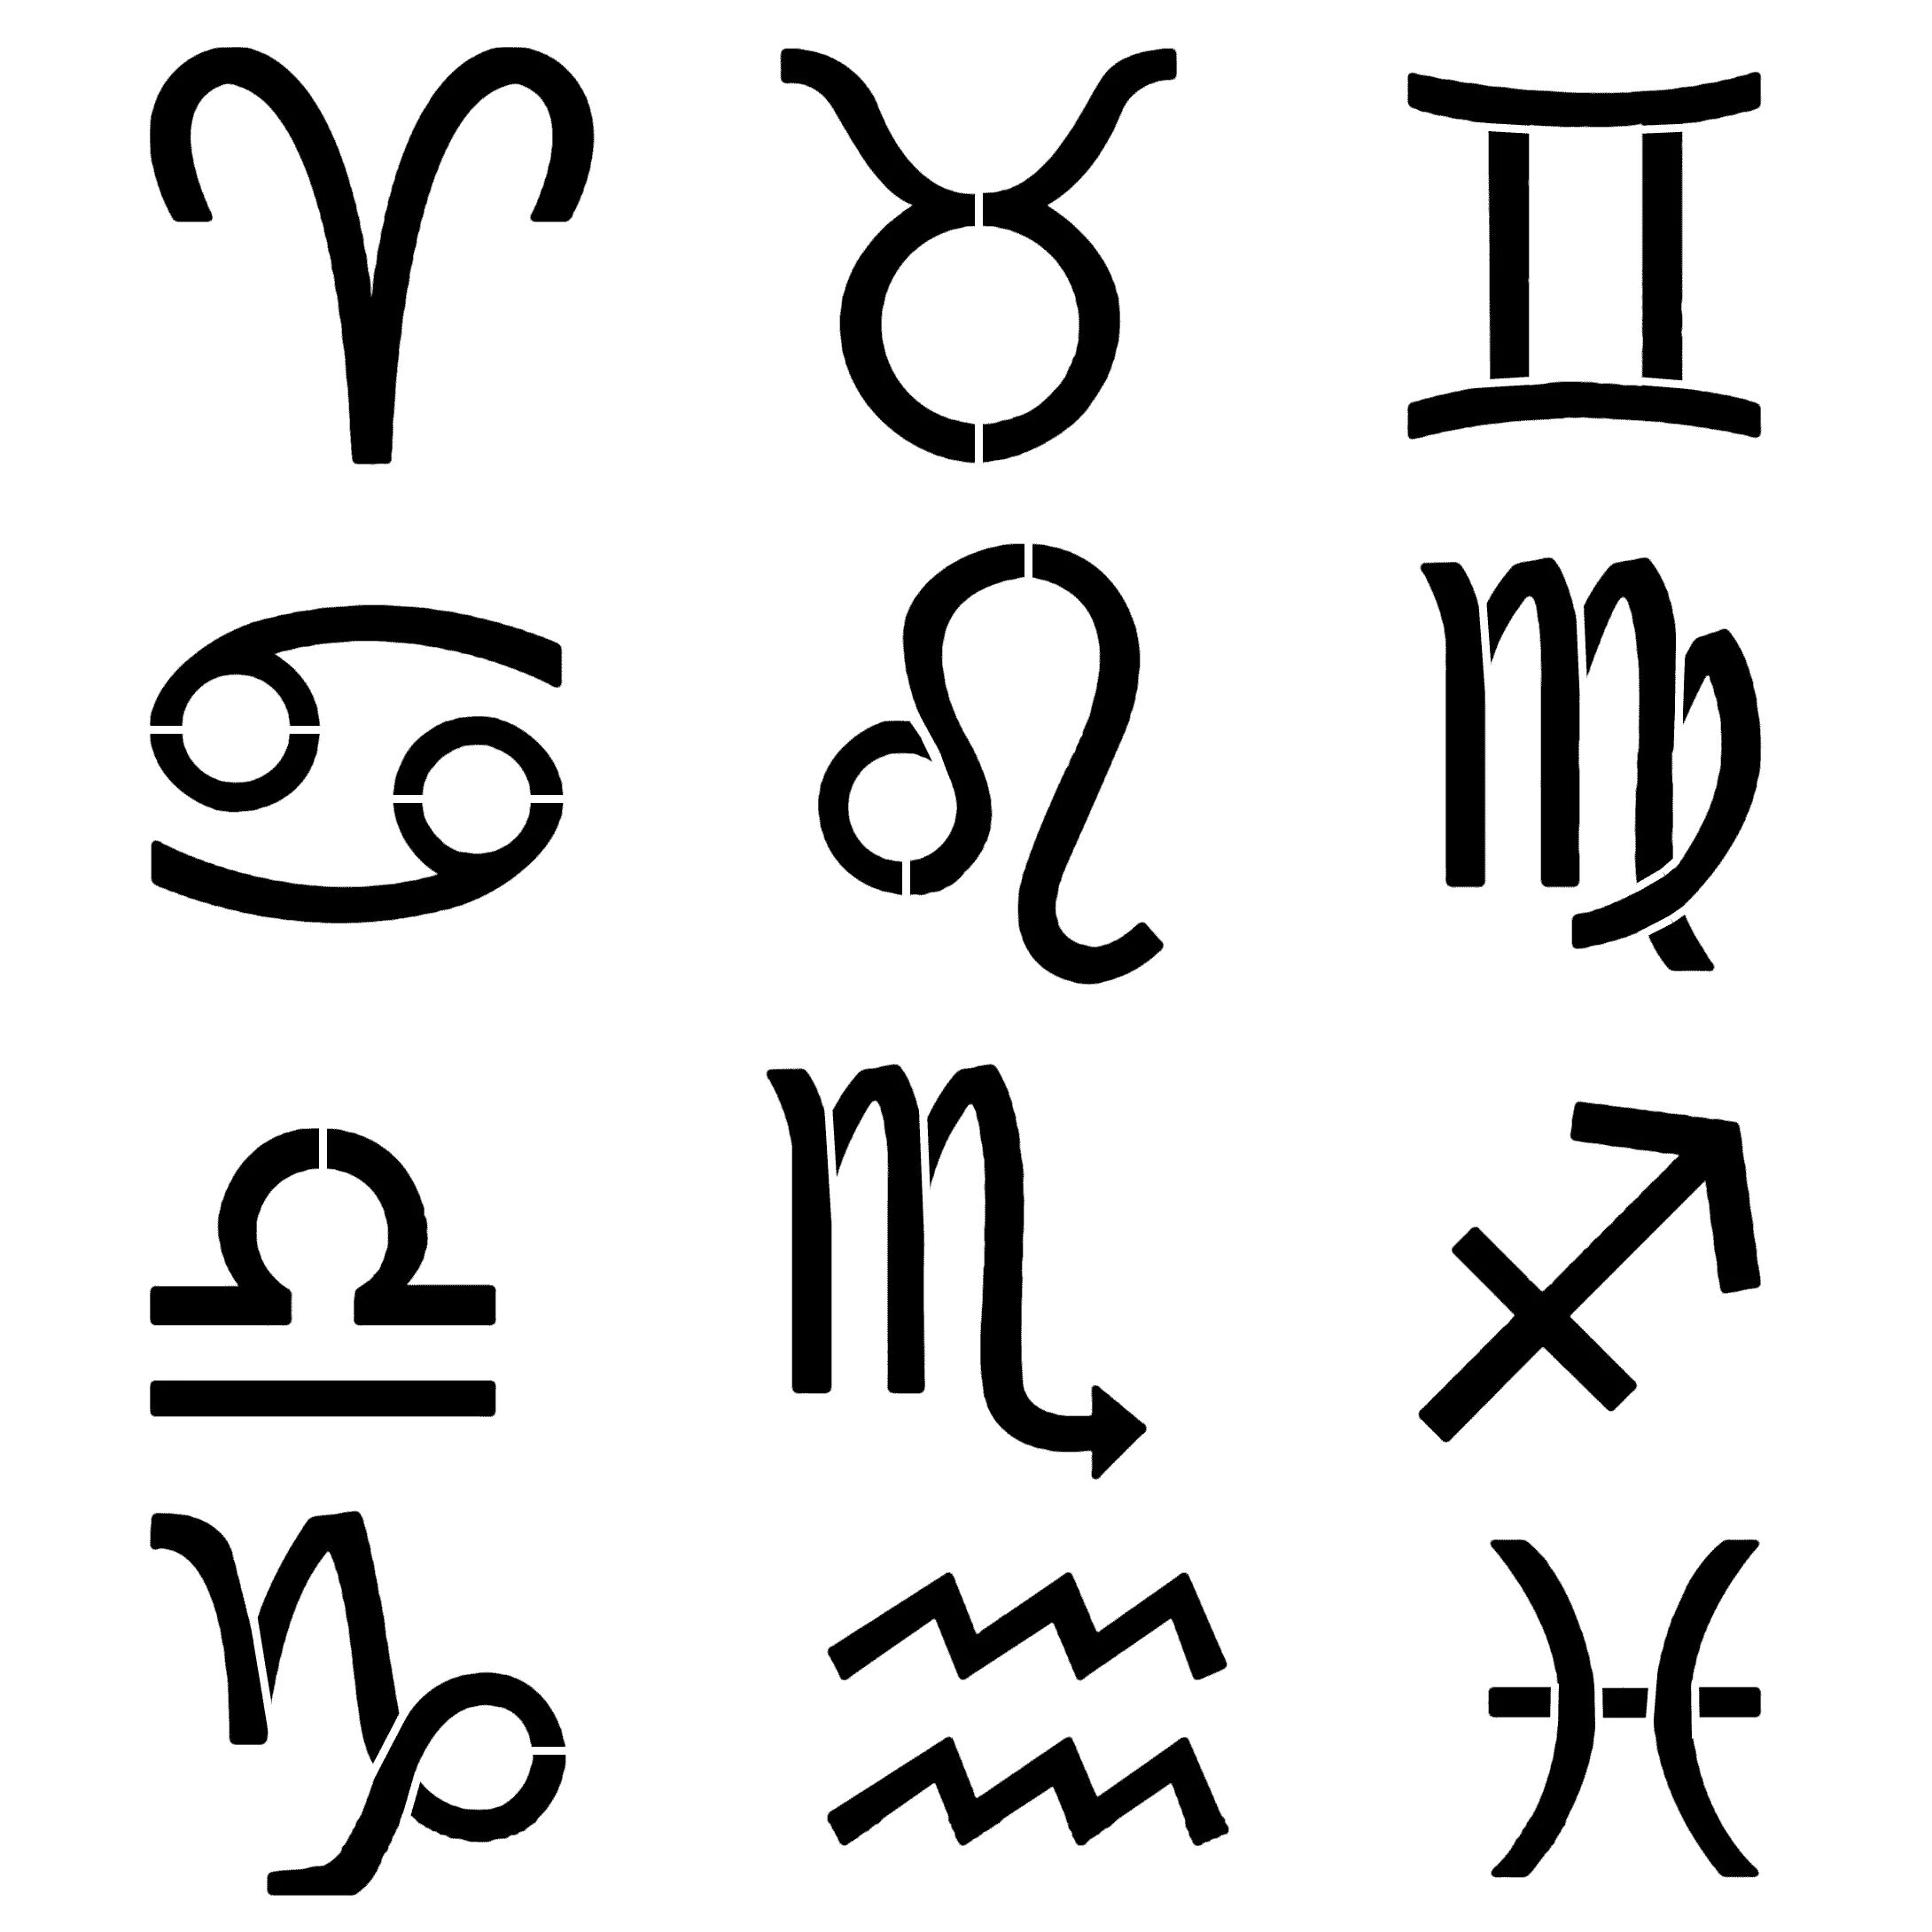 Как выглядят знаки зодиака символы. Знаки зодиака. Символы. Символы зодиака. Красивые символы знаков зодиака.